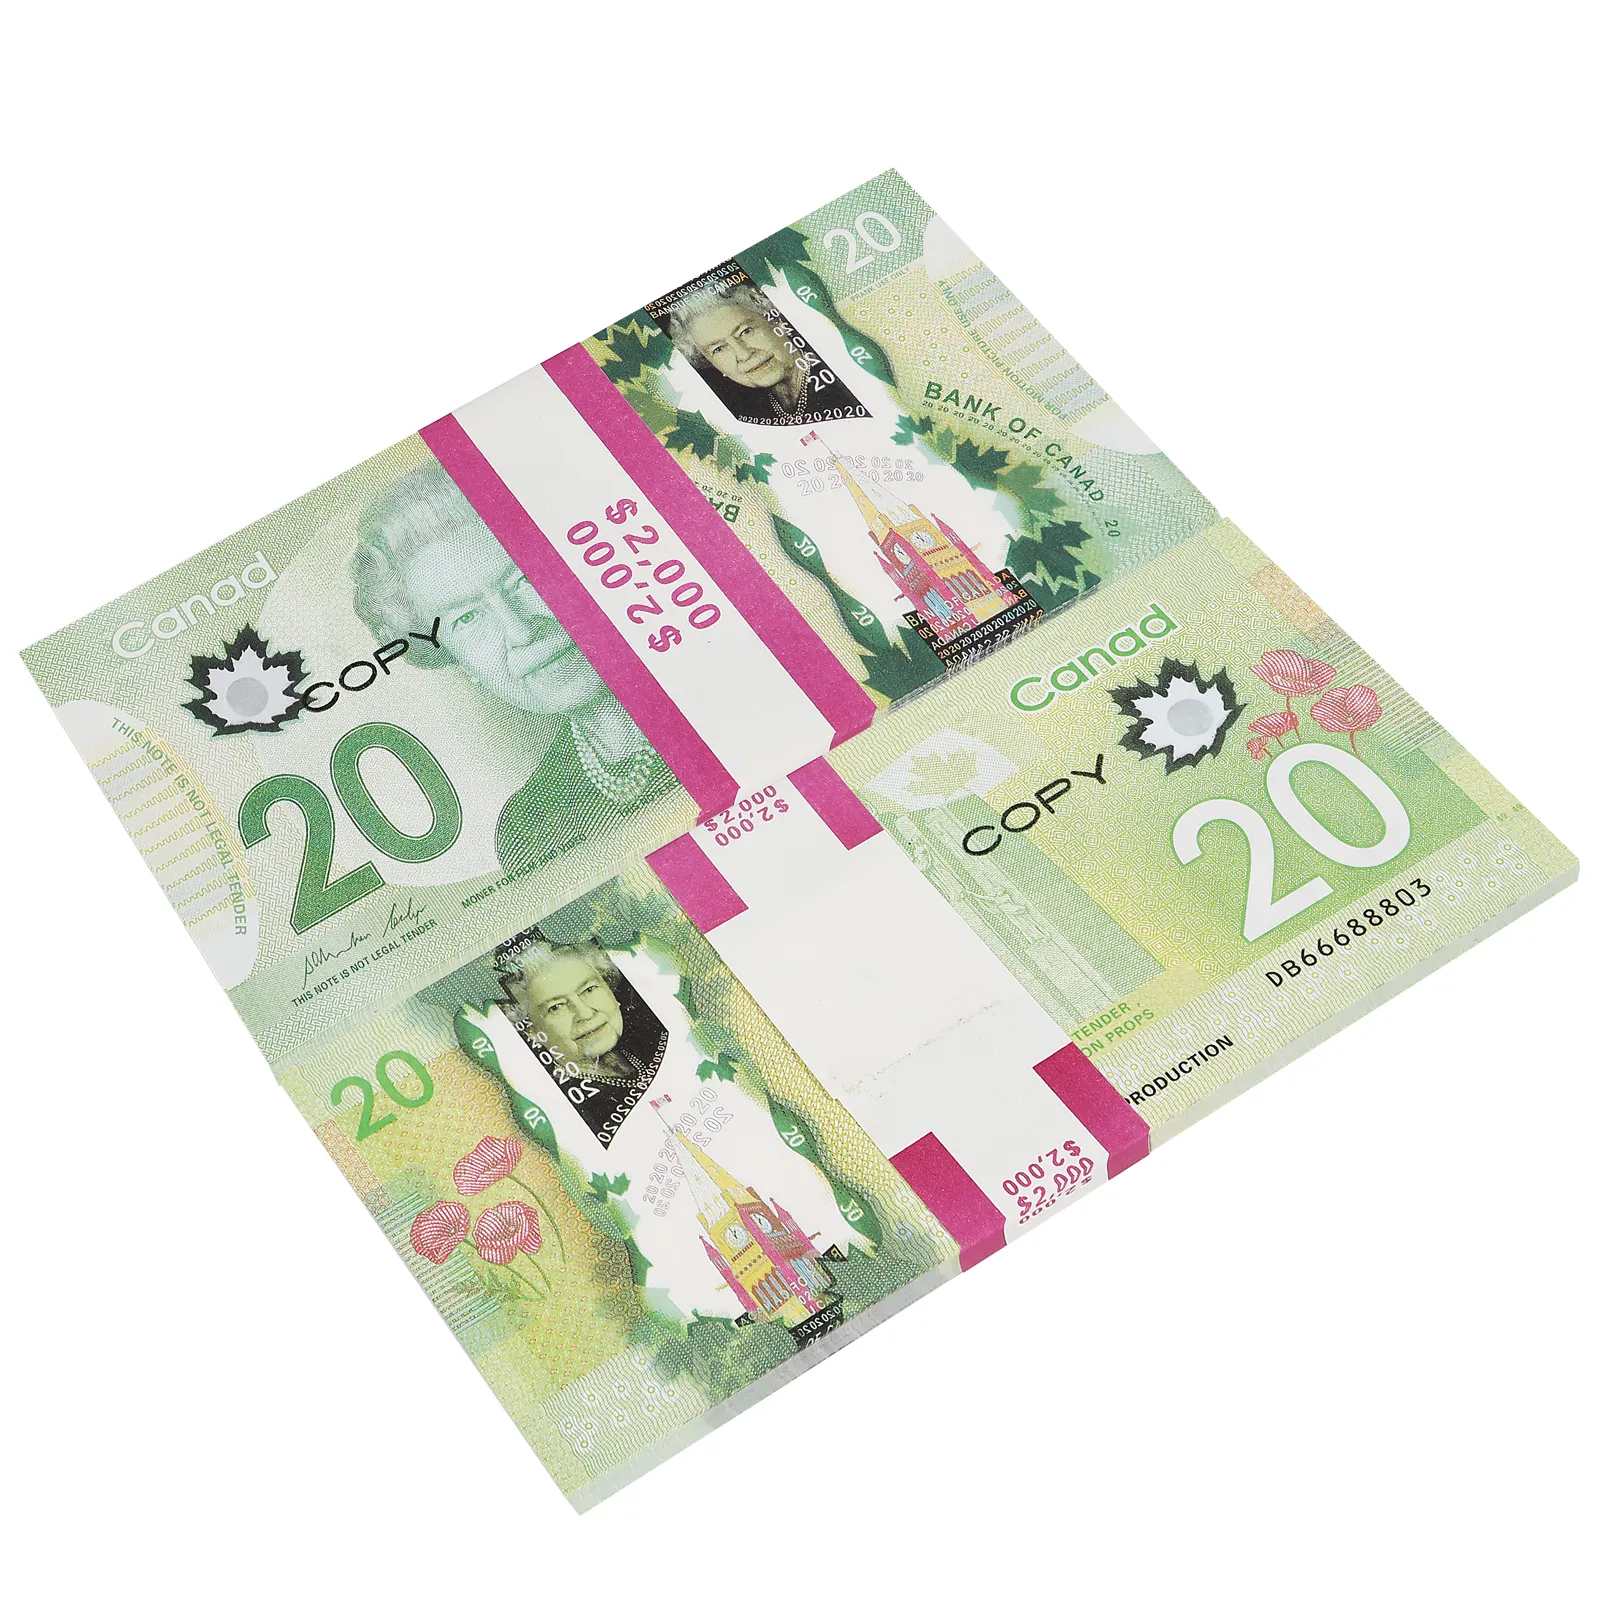 소품 캐나다 게임 머니 100s 캐나다 달러 CAD 지폐 종이 종이 놀이 지폐 영화 제작 소품 275f